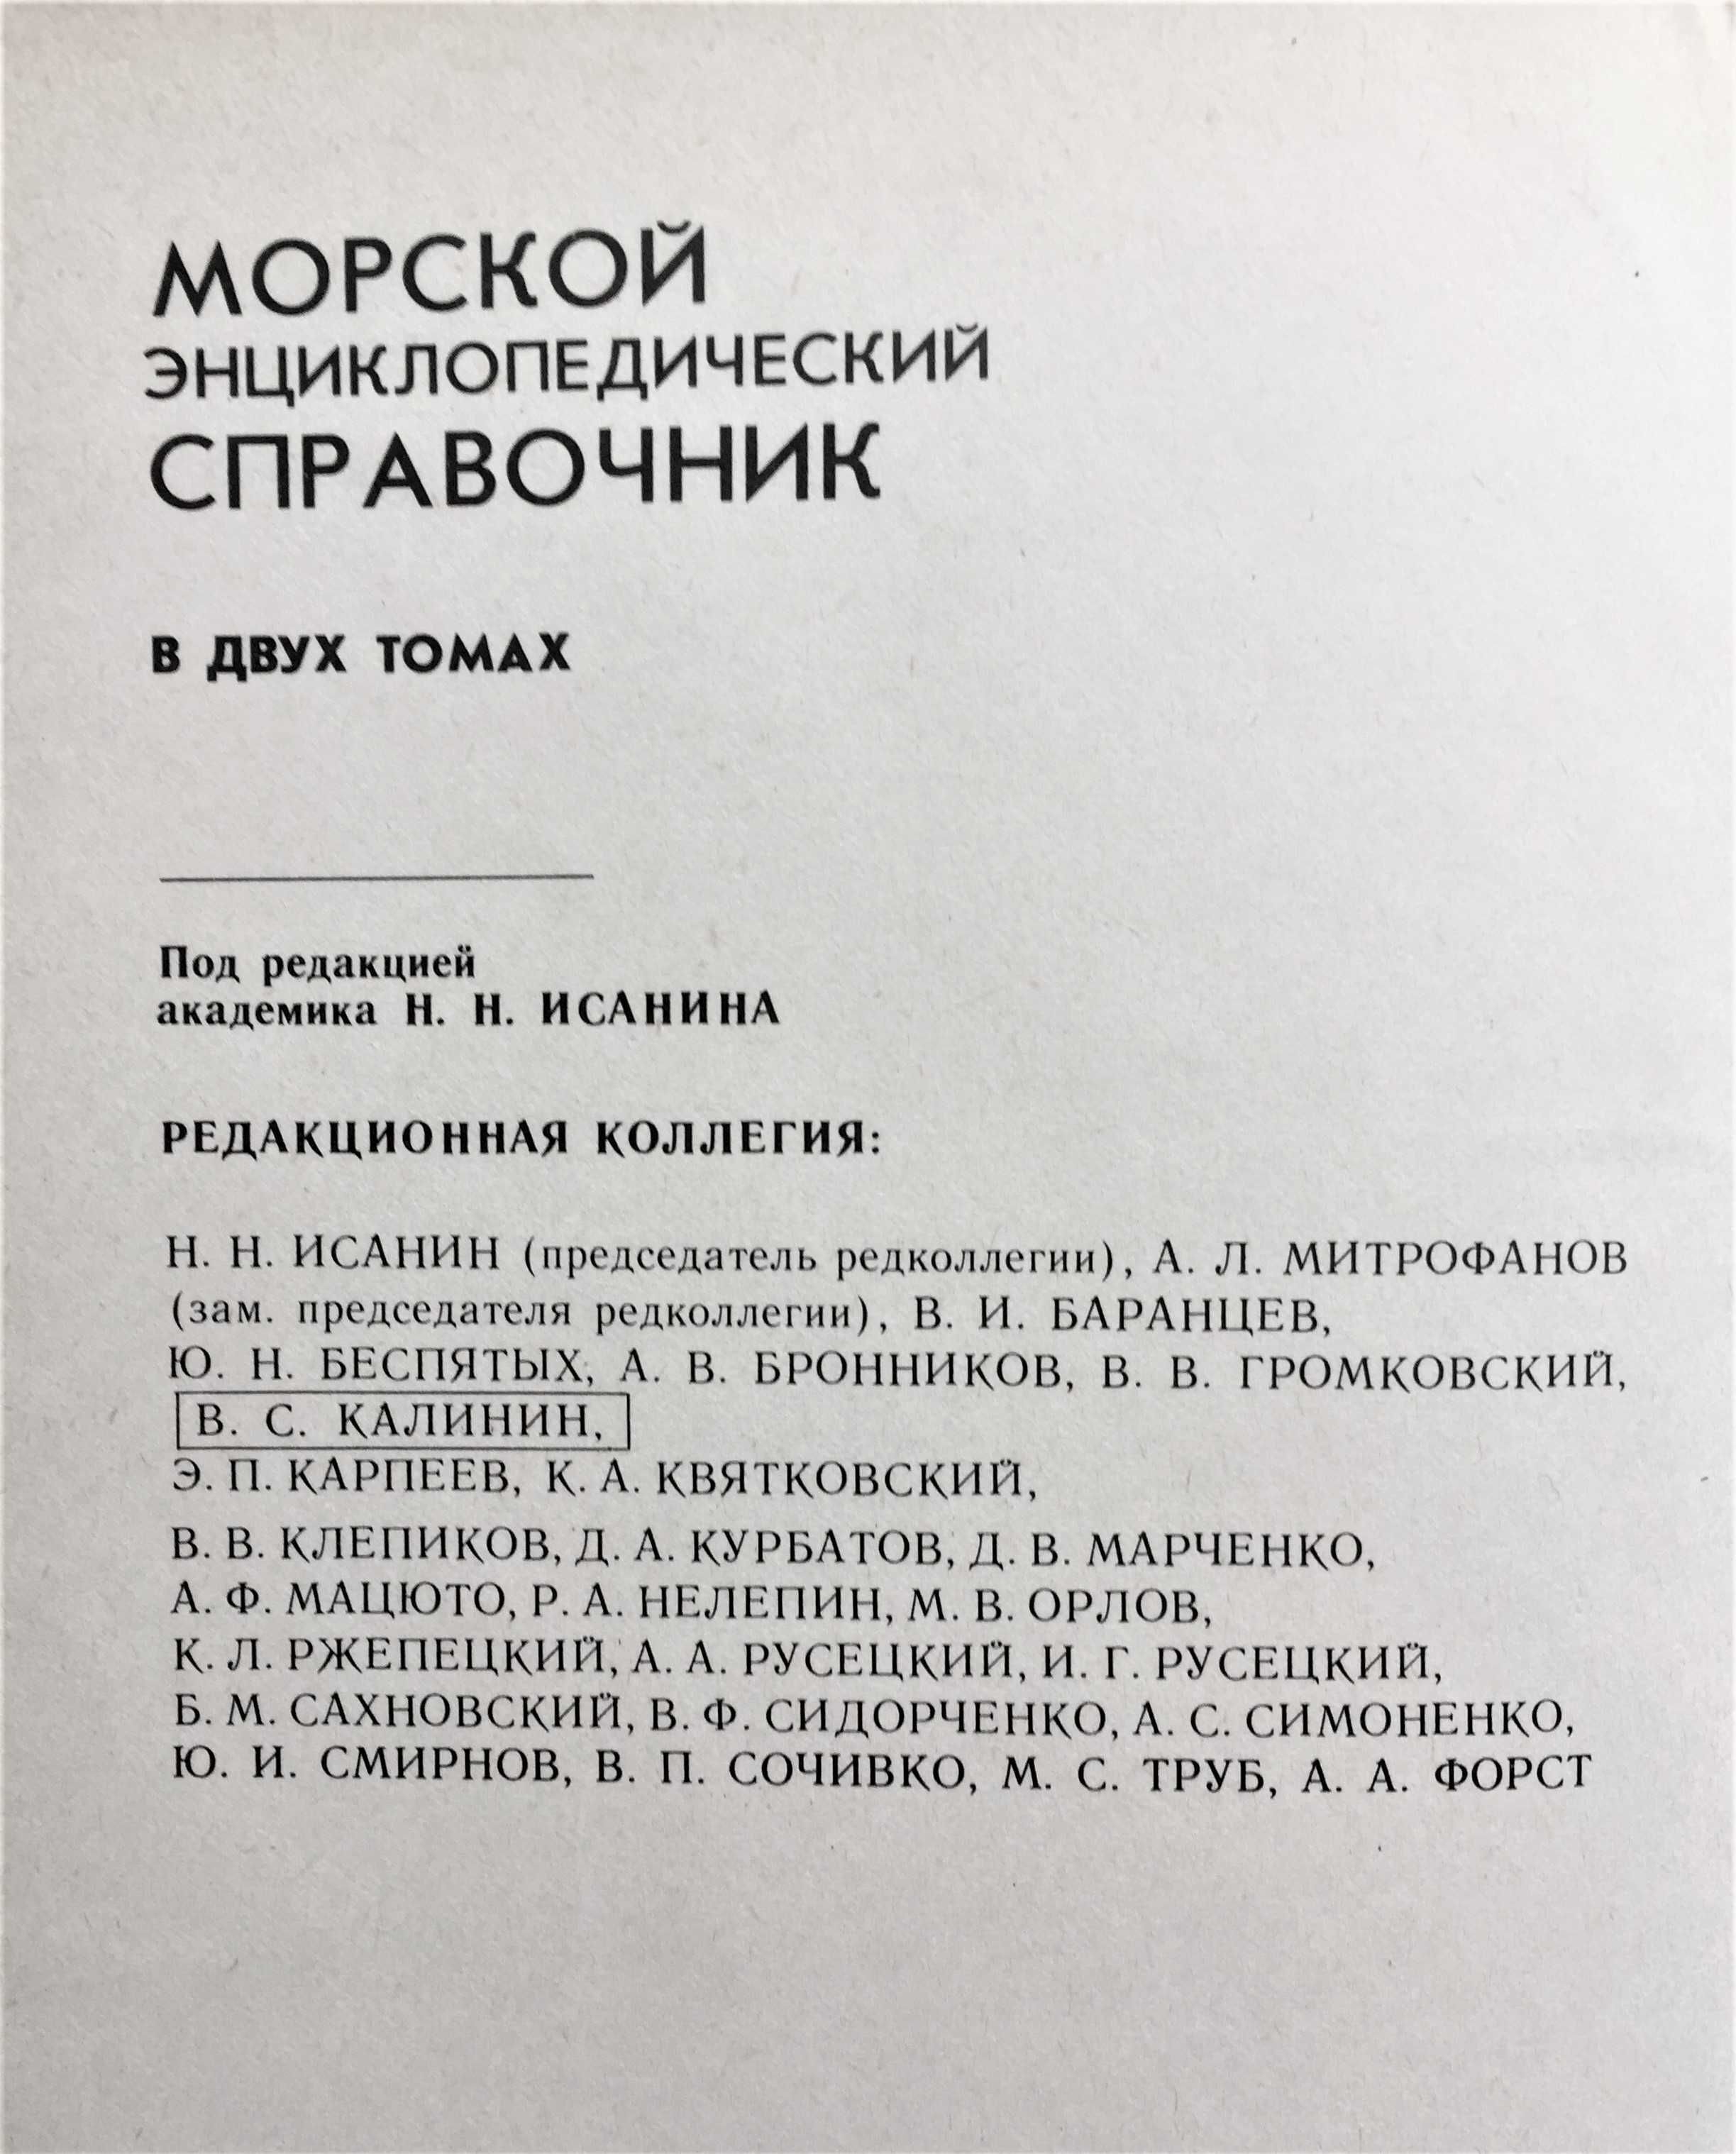 Морской энциклопедический справочник в двух томах